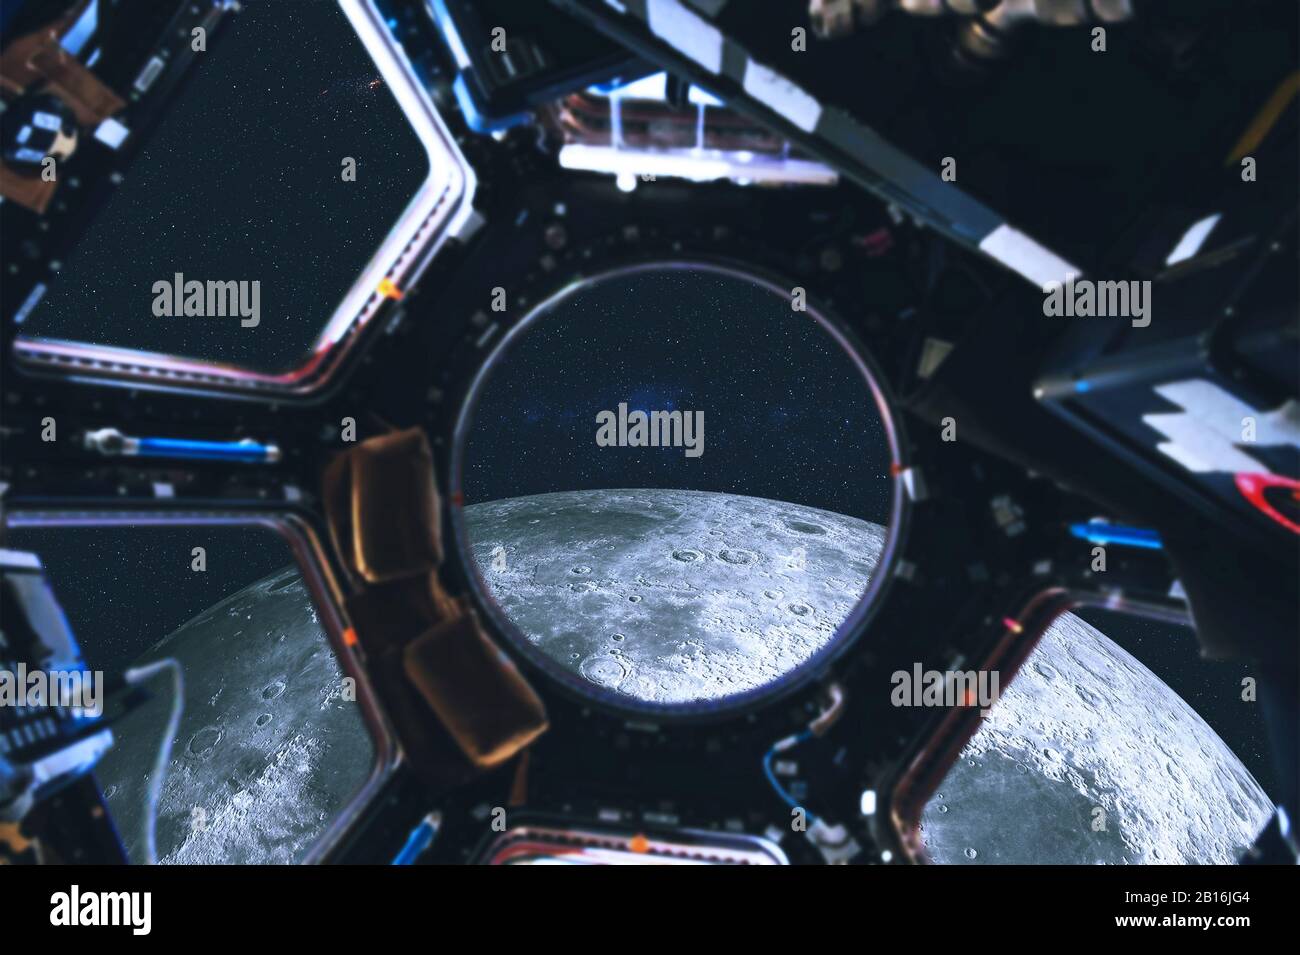 Vue de l'espace profond vers la Lune depuis l'illuminateur de la station spatiale. Voyage en grand espace. Éléments de cette image fournie par la NASA Banque D'Images